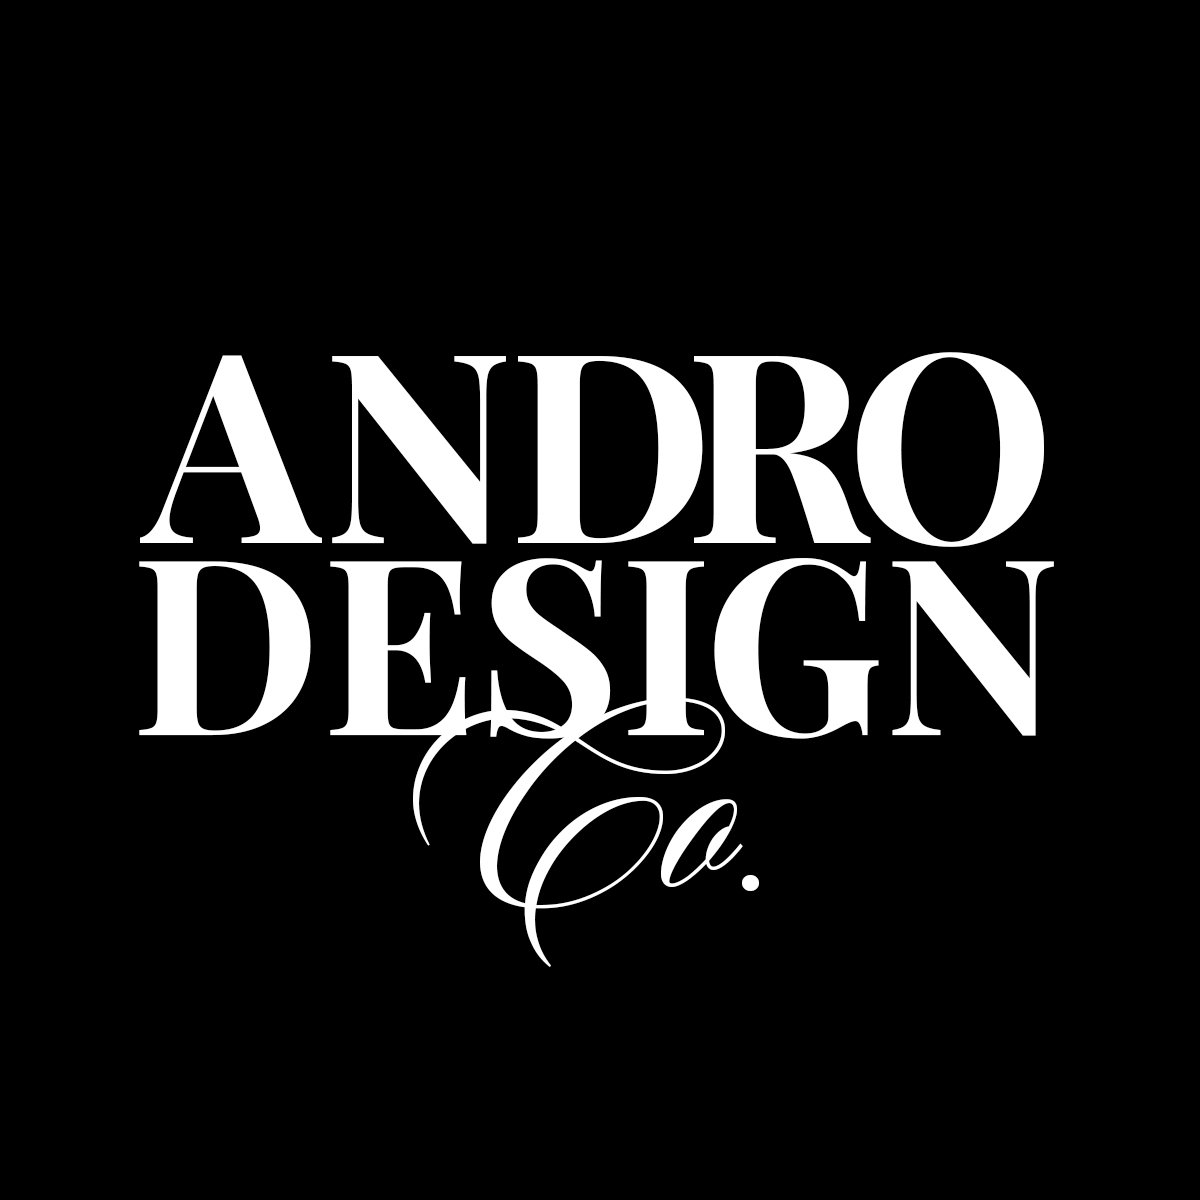 Andro Design Co.